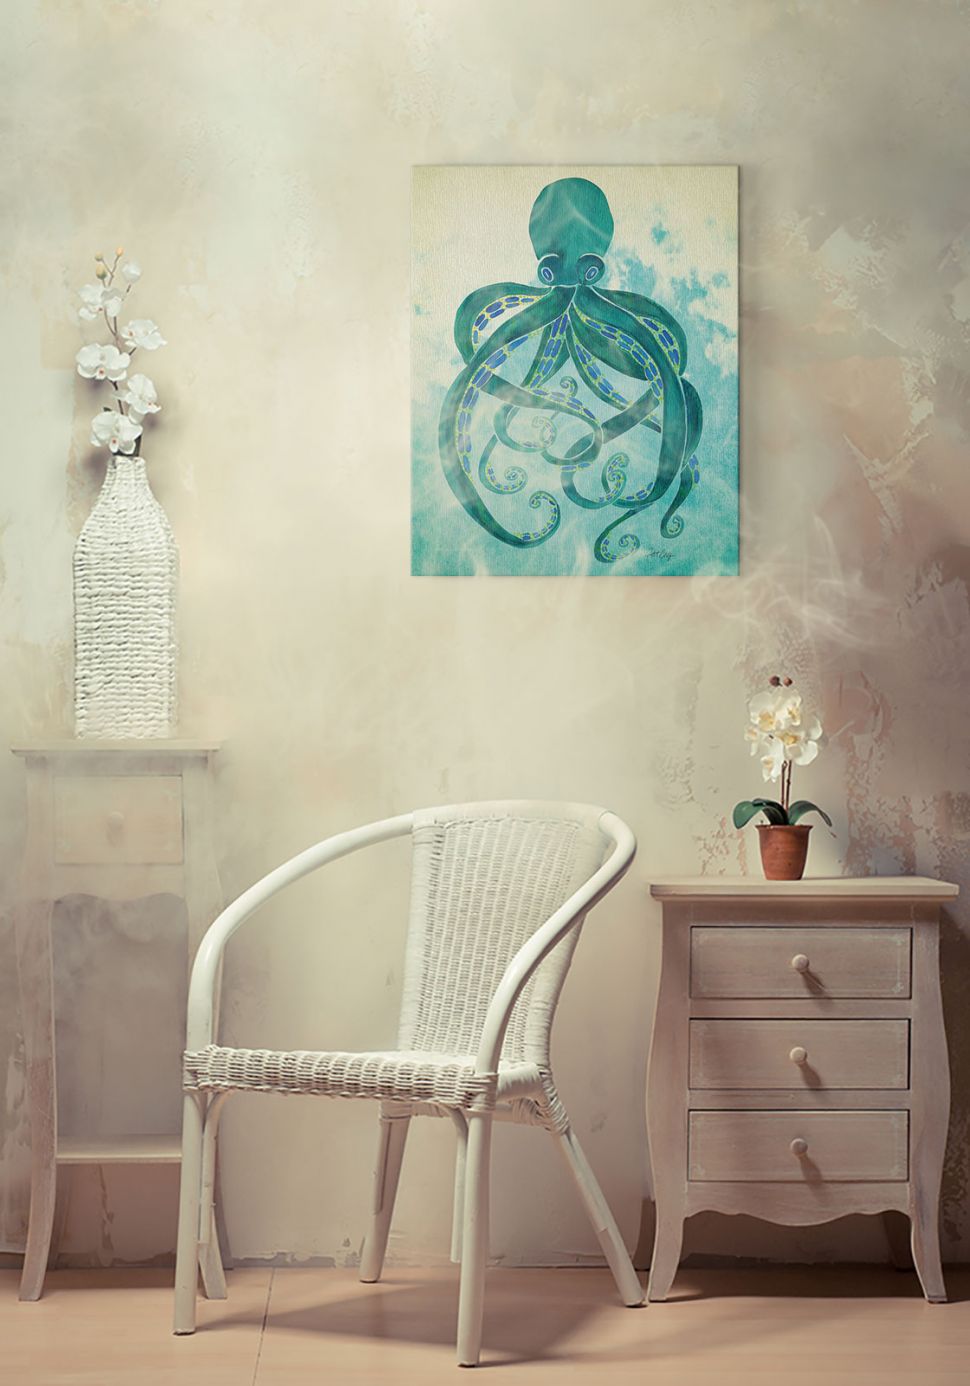 Obraz naścienny wiszący w pokoju nad fotelem przedstawiający turkusową ośmiornicę